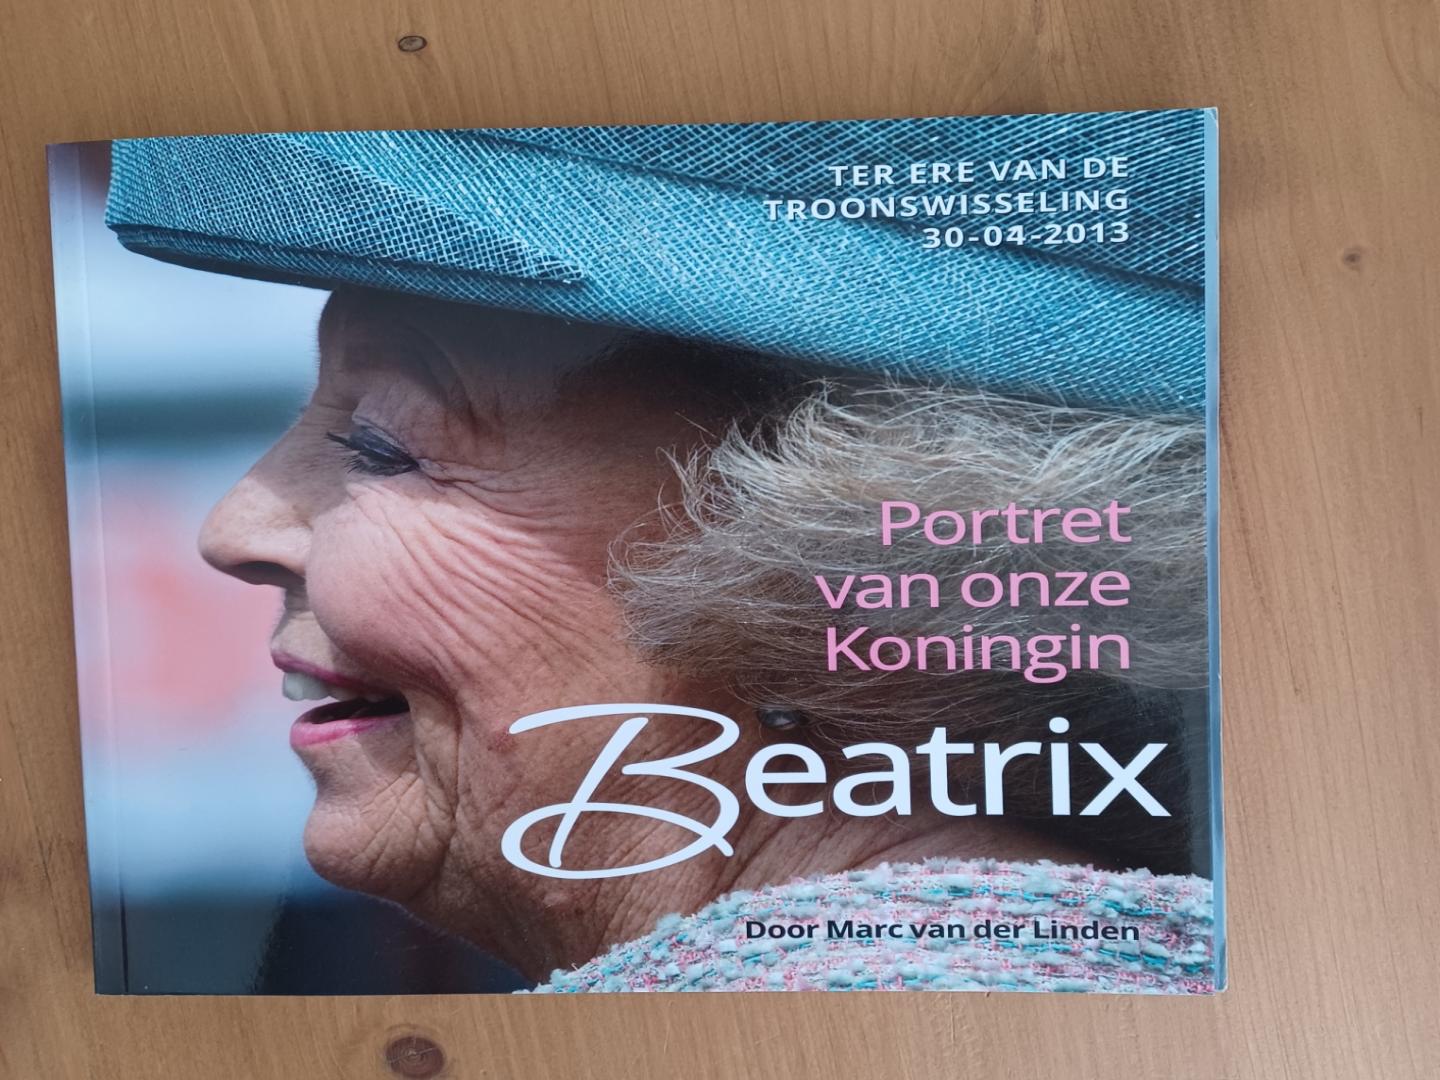 Linden, Marc van der - Portret van onze koningin Beatrix, ter ere van de troonswisseling 30-04-2013